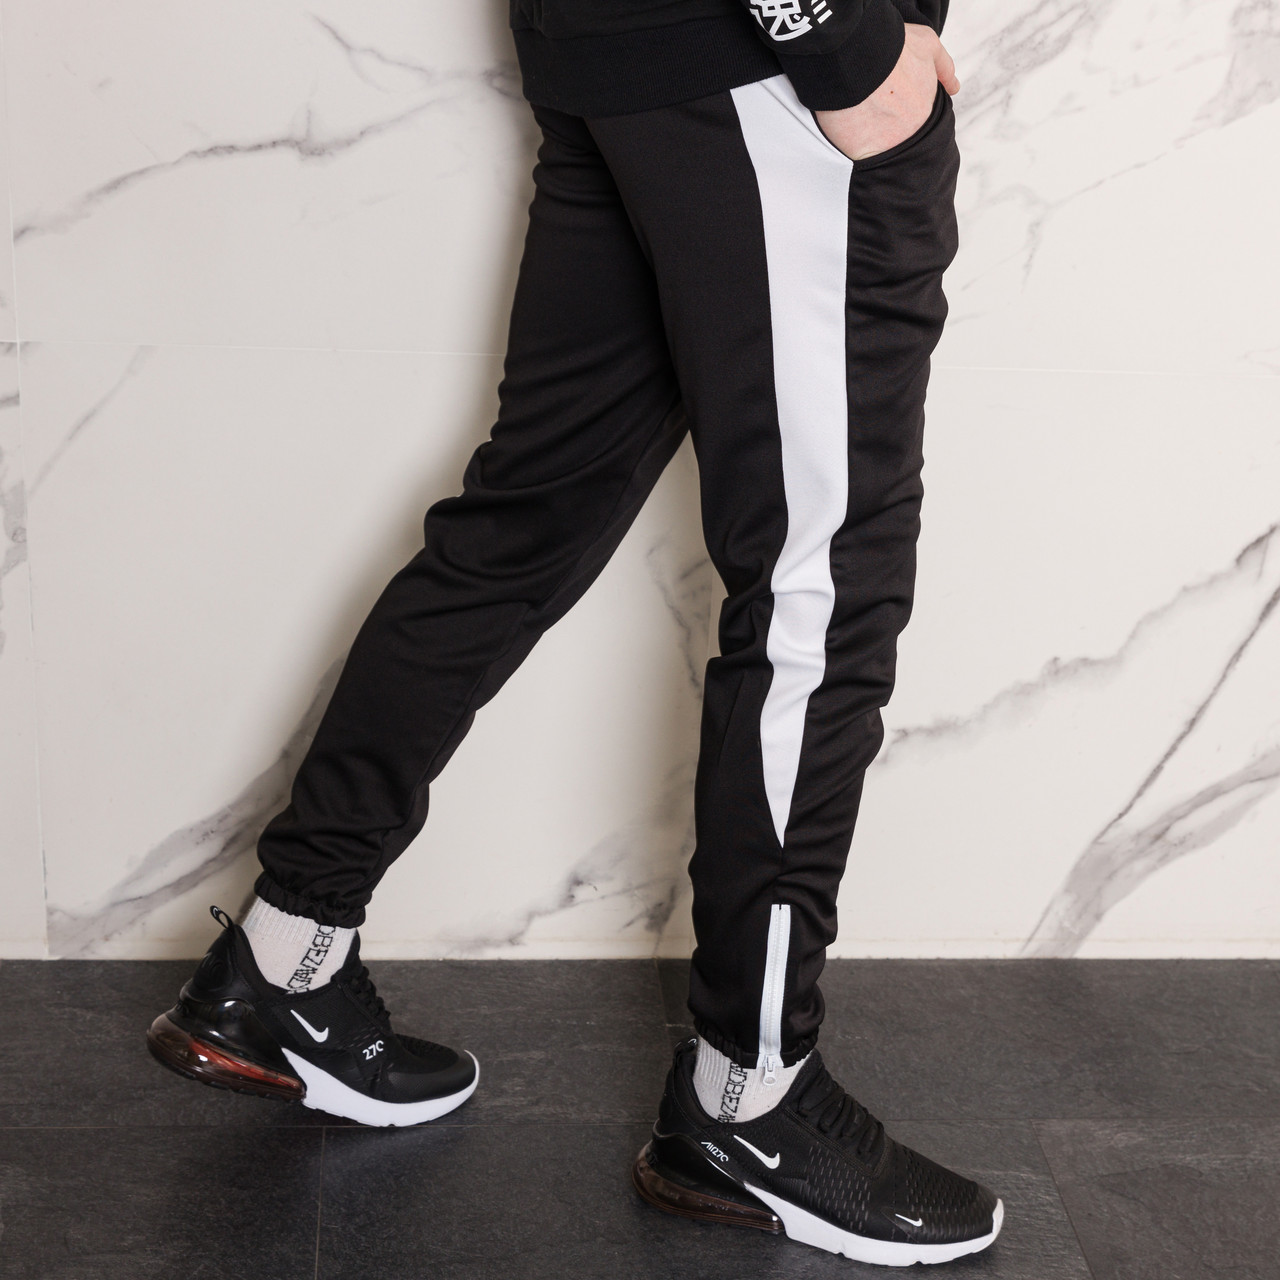 Спортивные штаны черные с белым лампасом мужские бренд ТУР модель Рокки (Rocky) TURWEAR - Фото 1